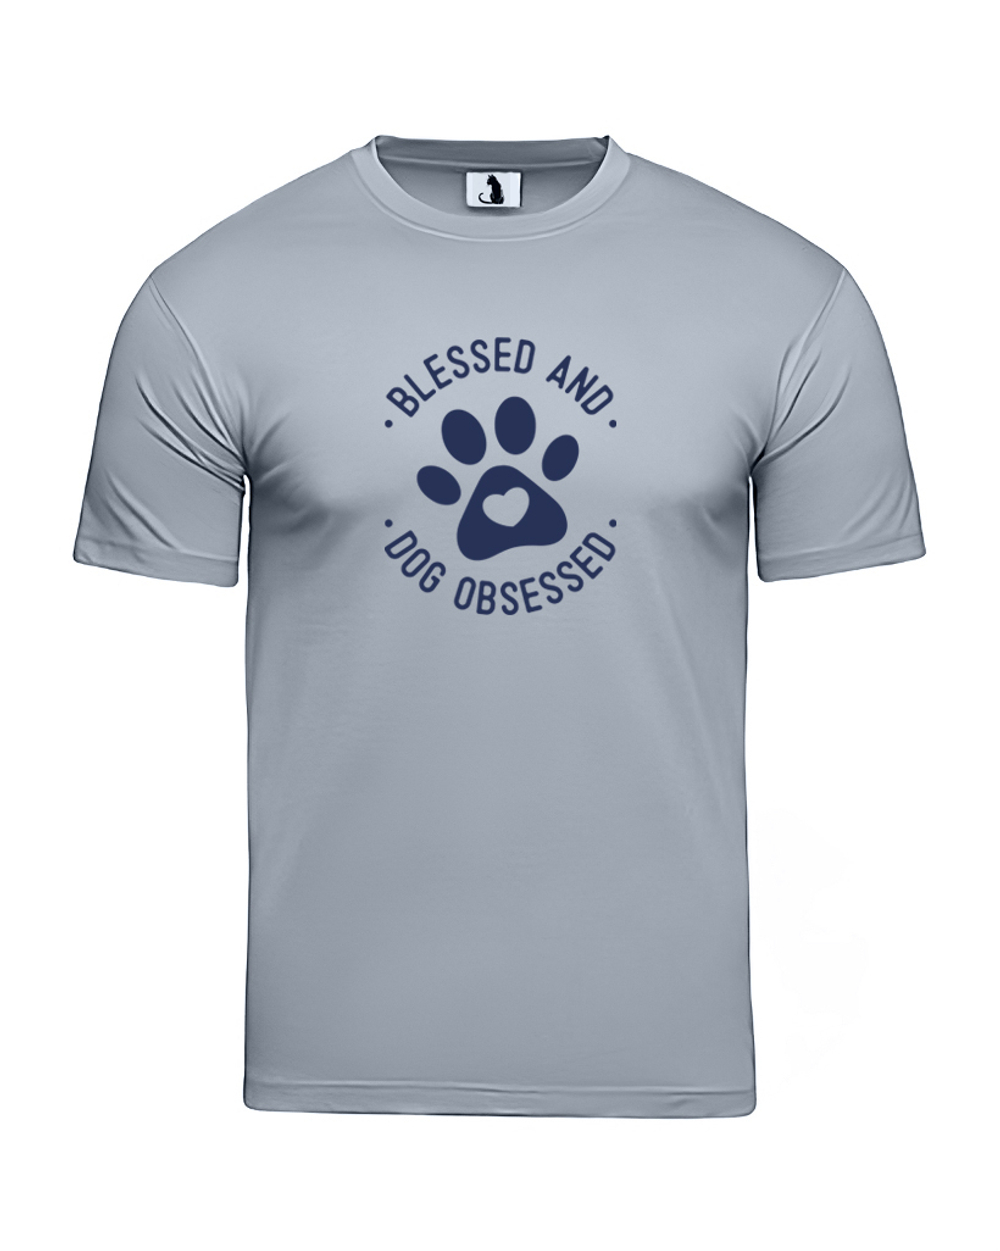 Футболка Blessed and dog obsessed unisex серая с синим рисунком